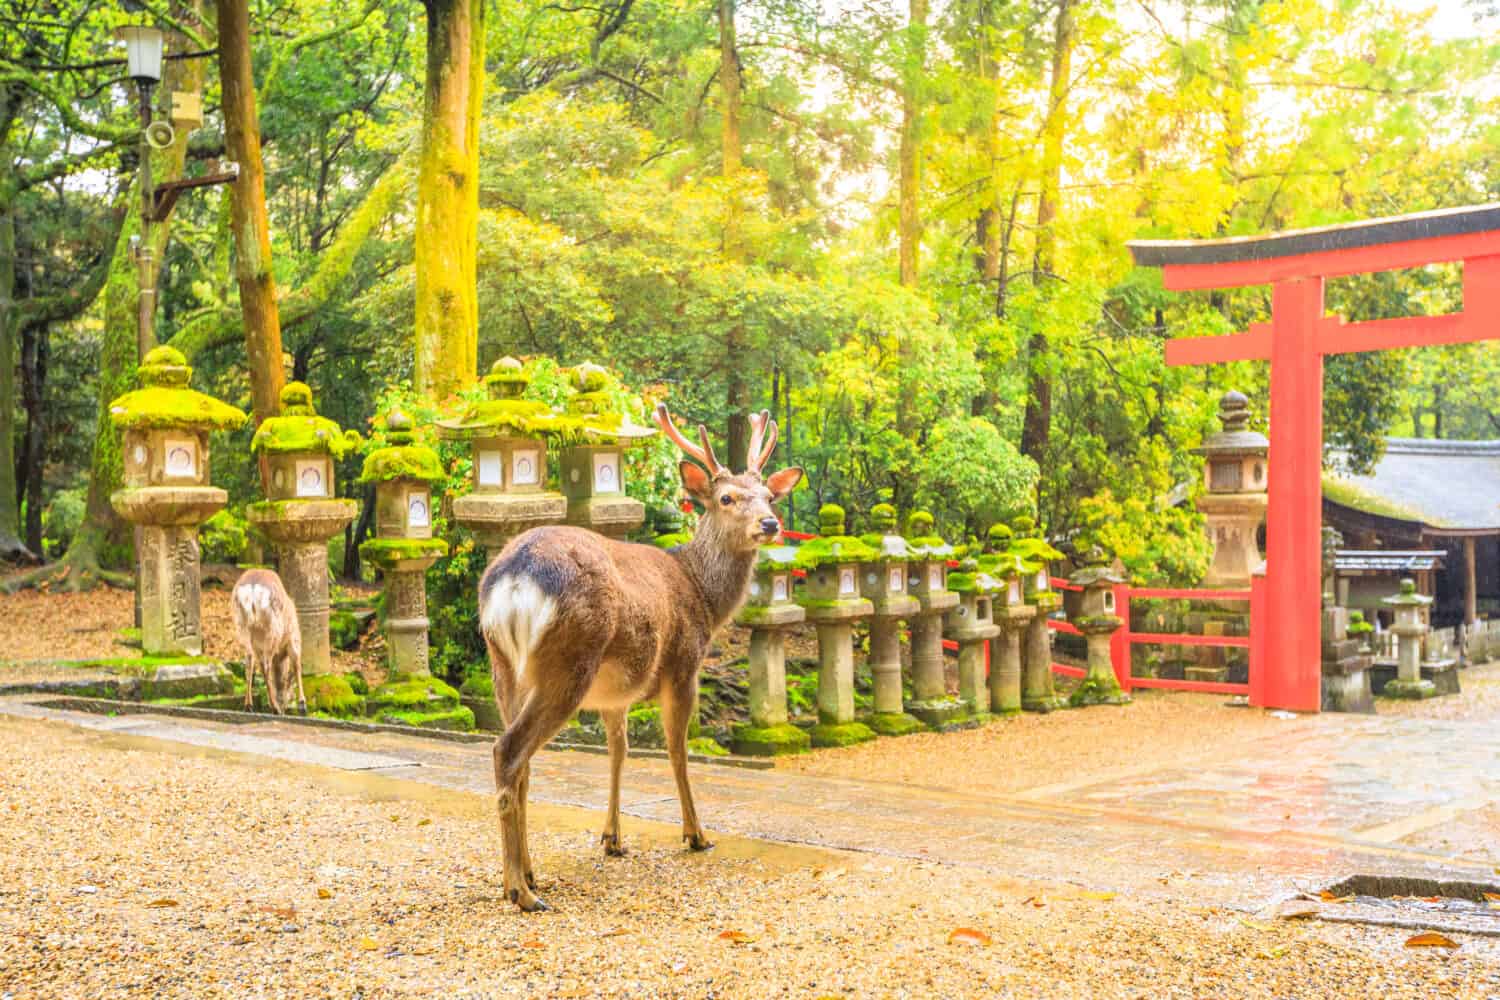 Cervi selvatici nel parco di Nara in Giappone. I cervi sono il simbolo della più grande attrazione turistica di Nara. Sullo sfondo, il cancello rosso Torii del Kasuga Taisha Shine, uno dei templi più popolari della città di Nara.